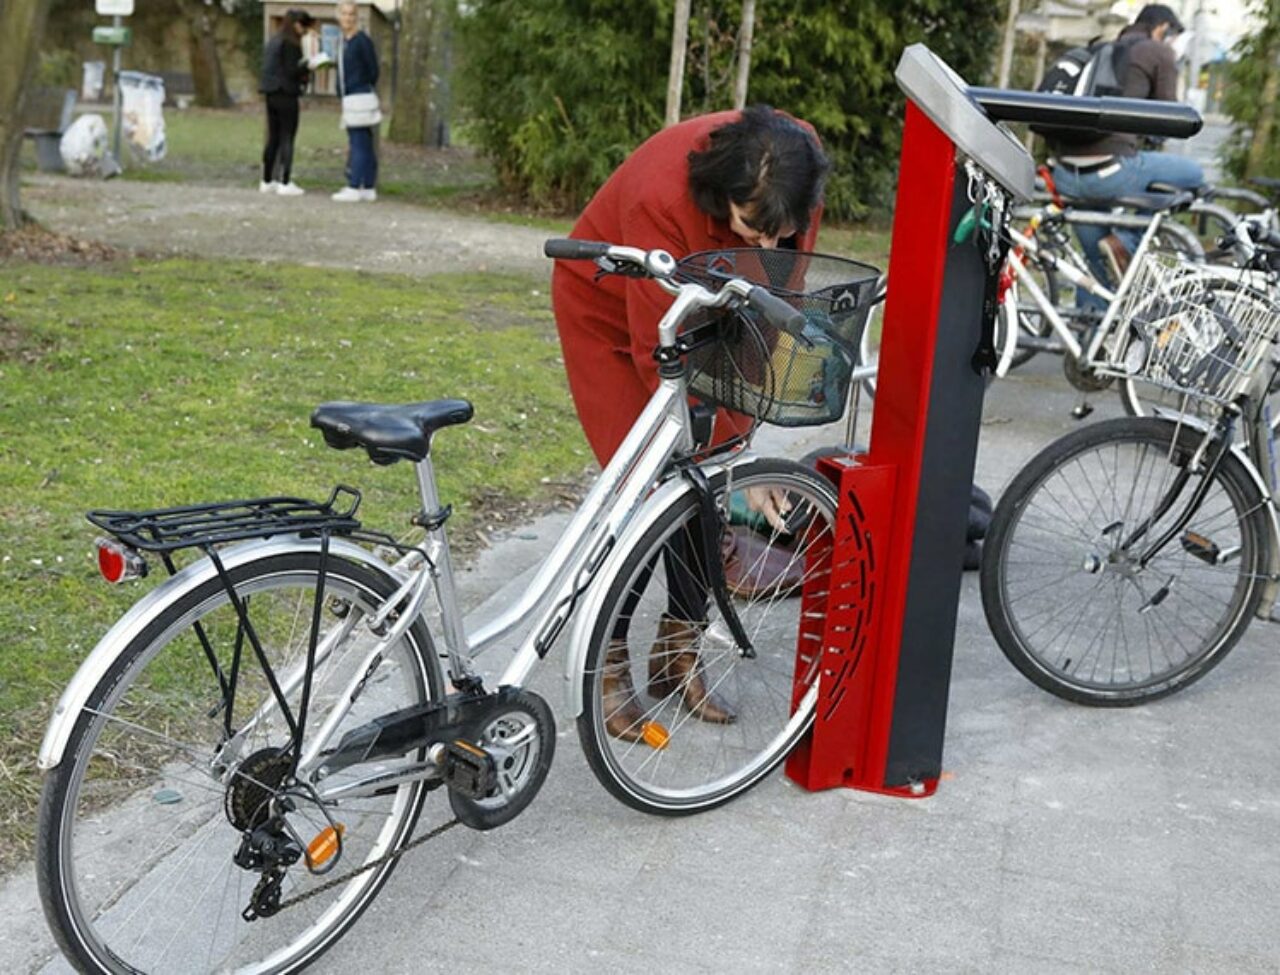 Station de réparation vélos Modèle Deluxe - vélo dans le cale-roue pour faciliter la réparation des vélos - Ville de Talence (33)